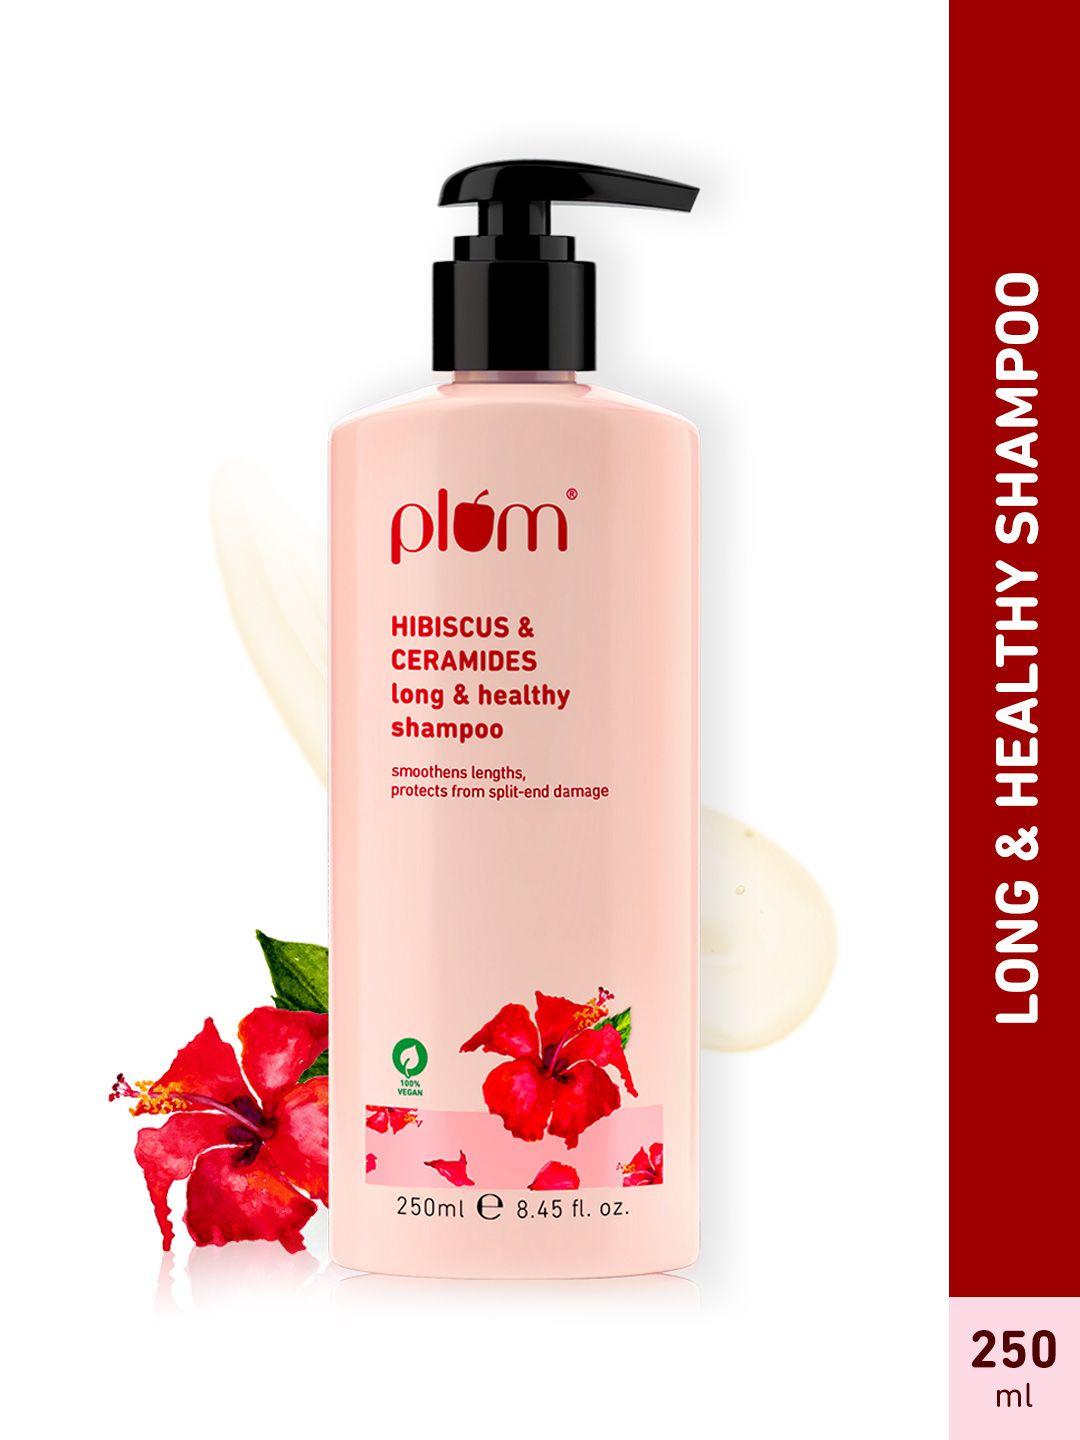 plum hibiscus & ceramides long & healthy shampoo prevents split ends - 250ml